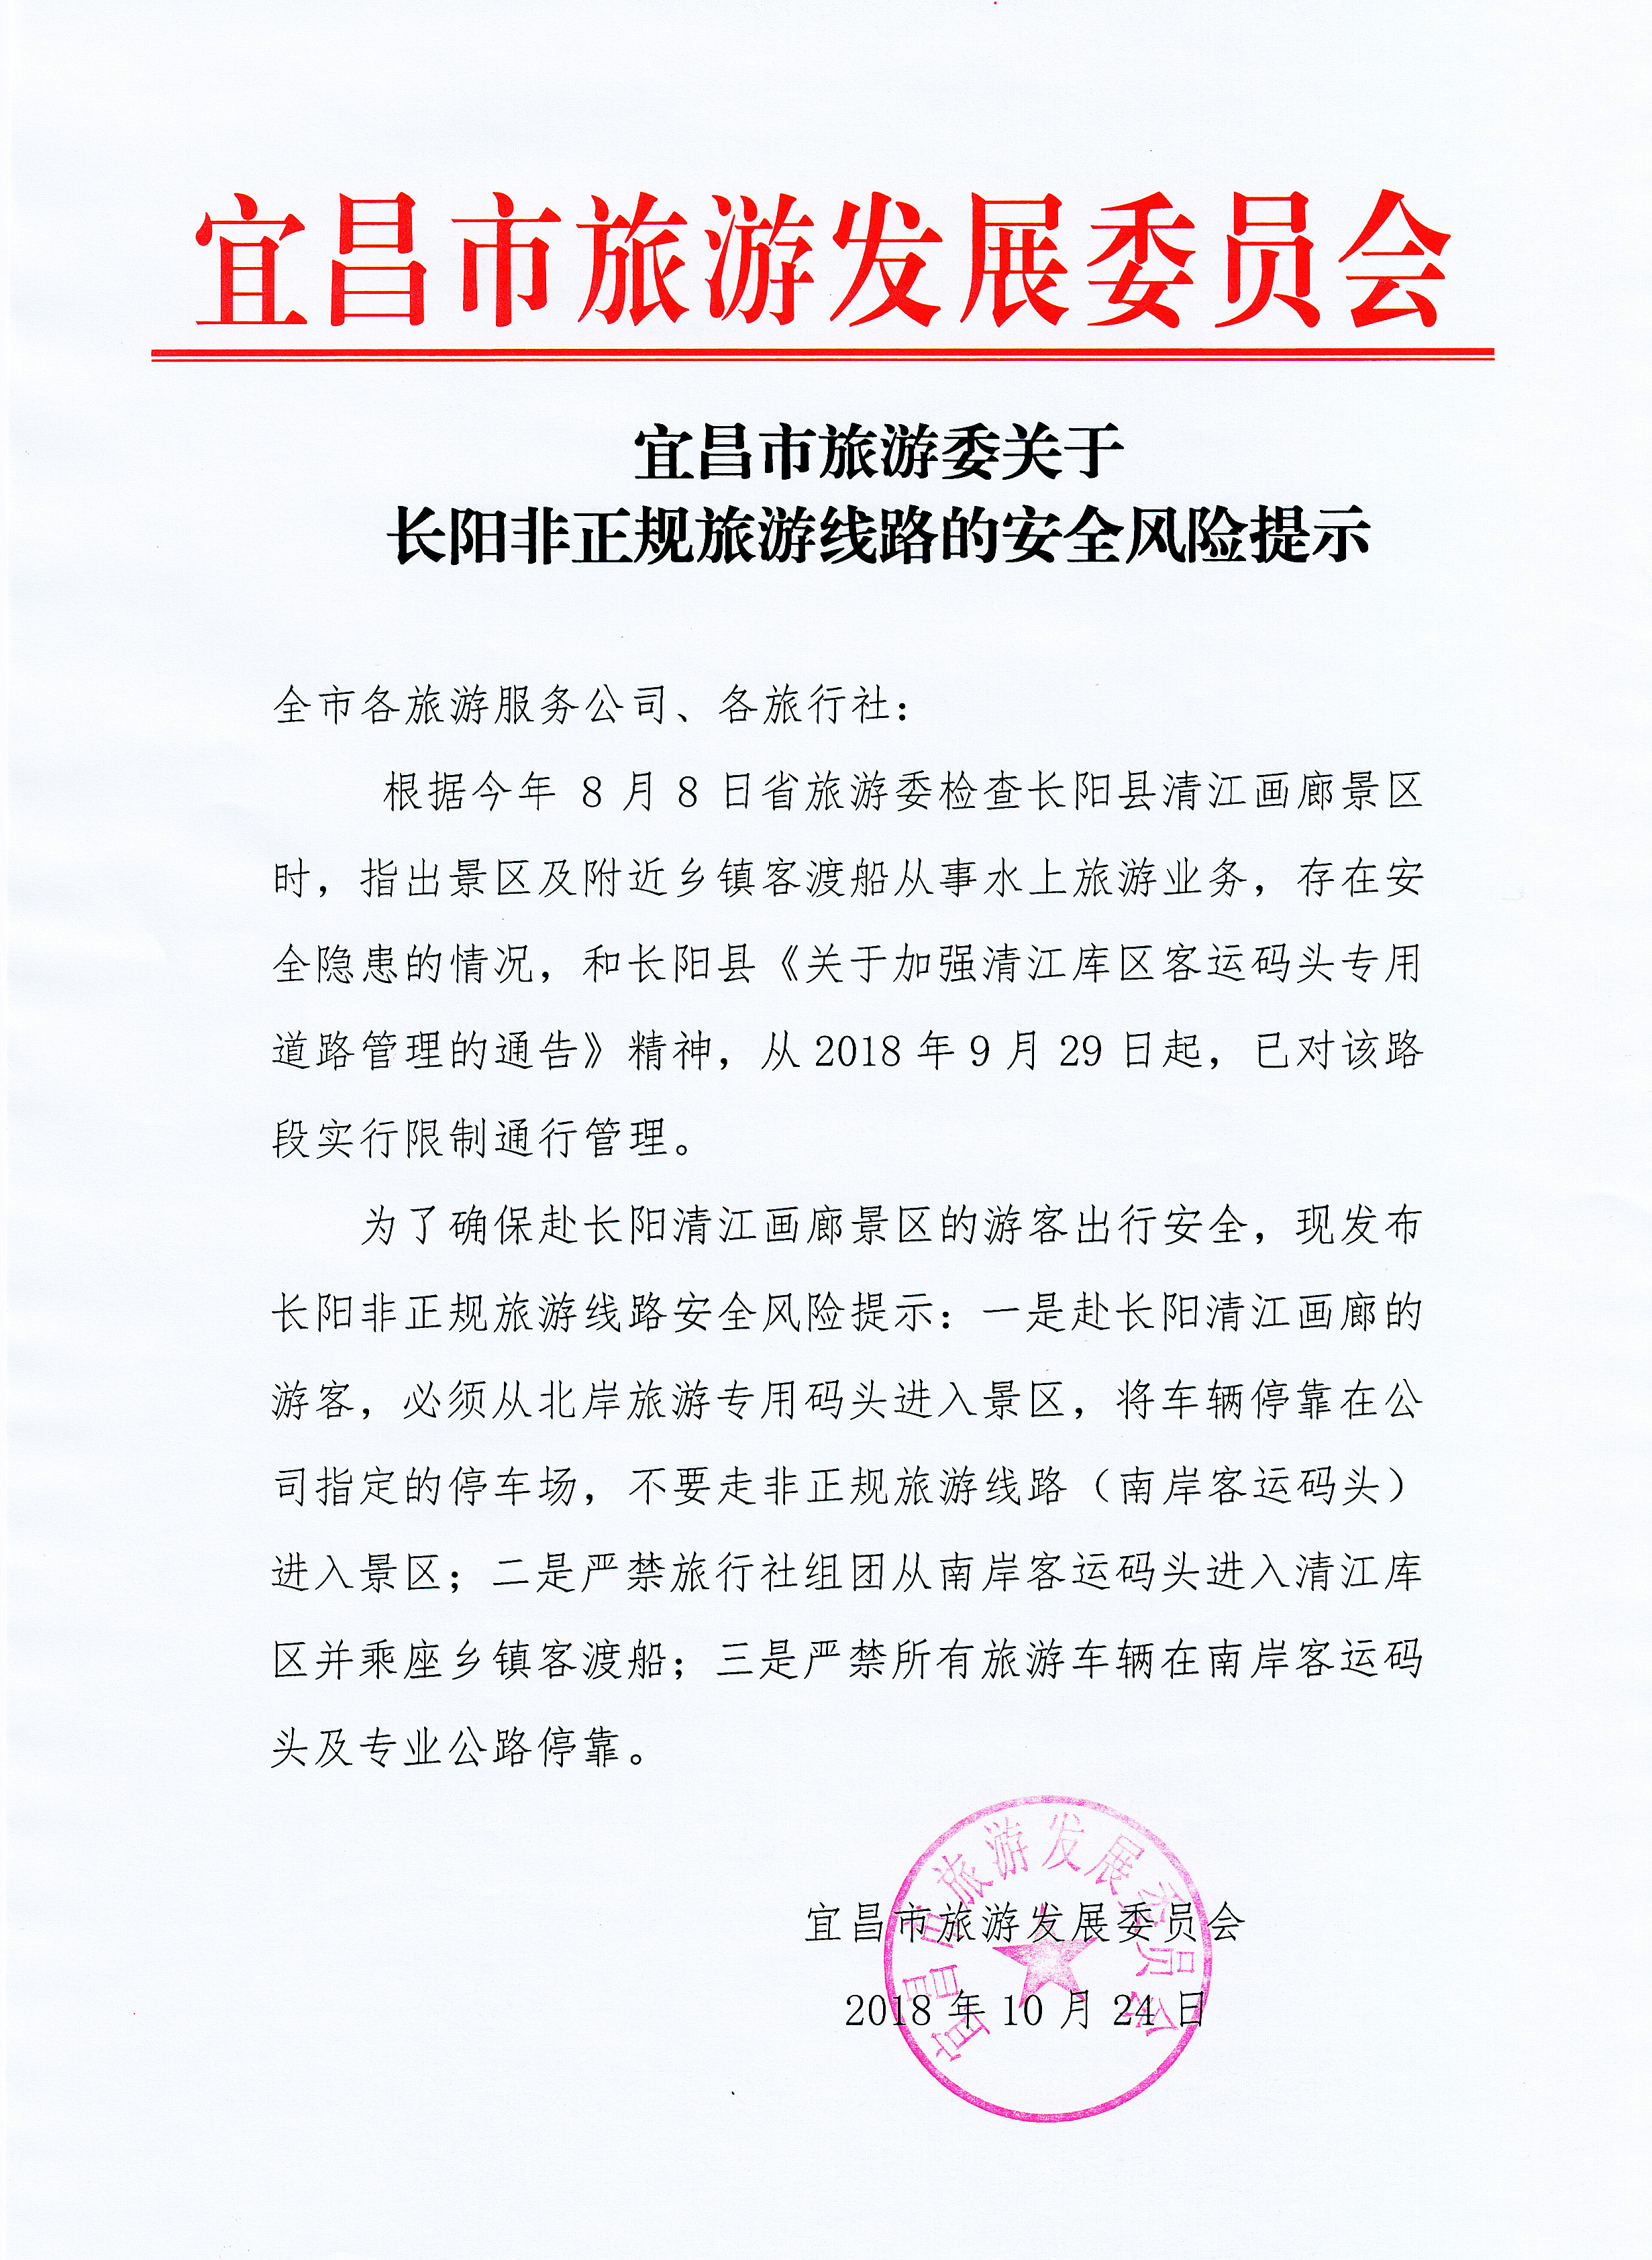 宜昌市旅游委关于长阳非正规旅游线路的安全风险提示